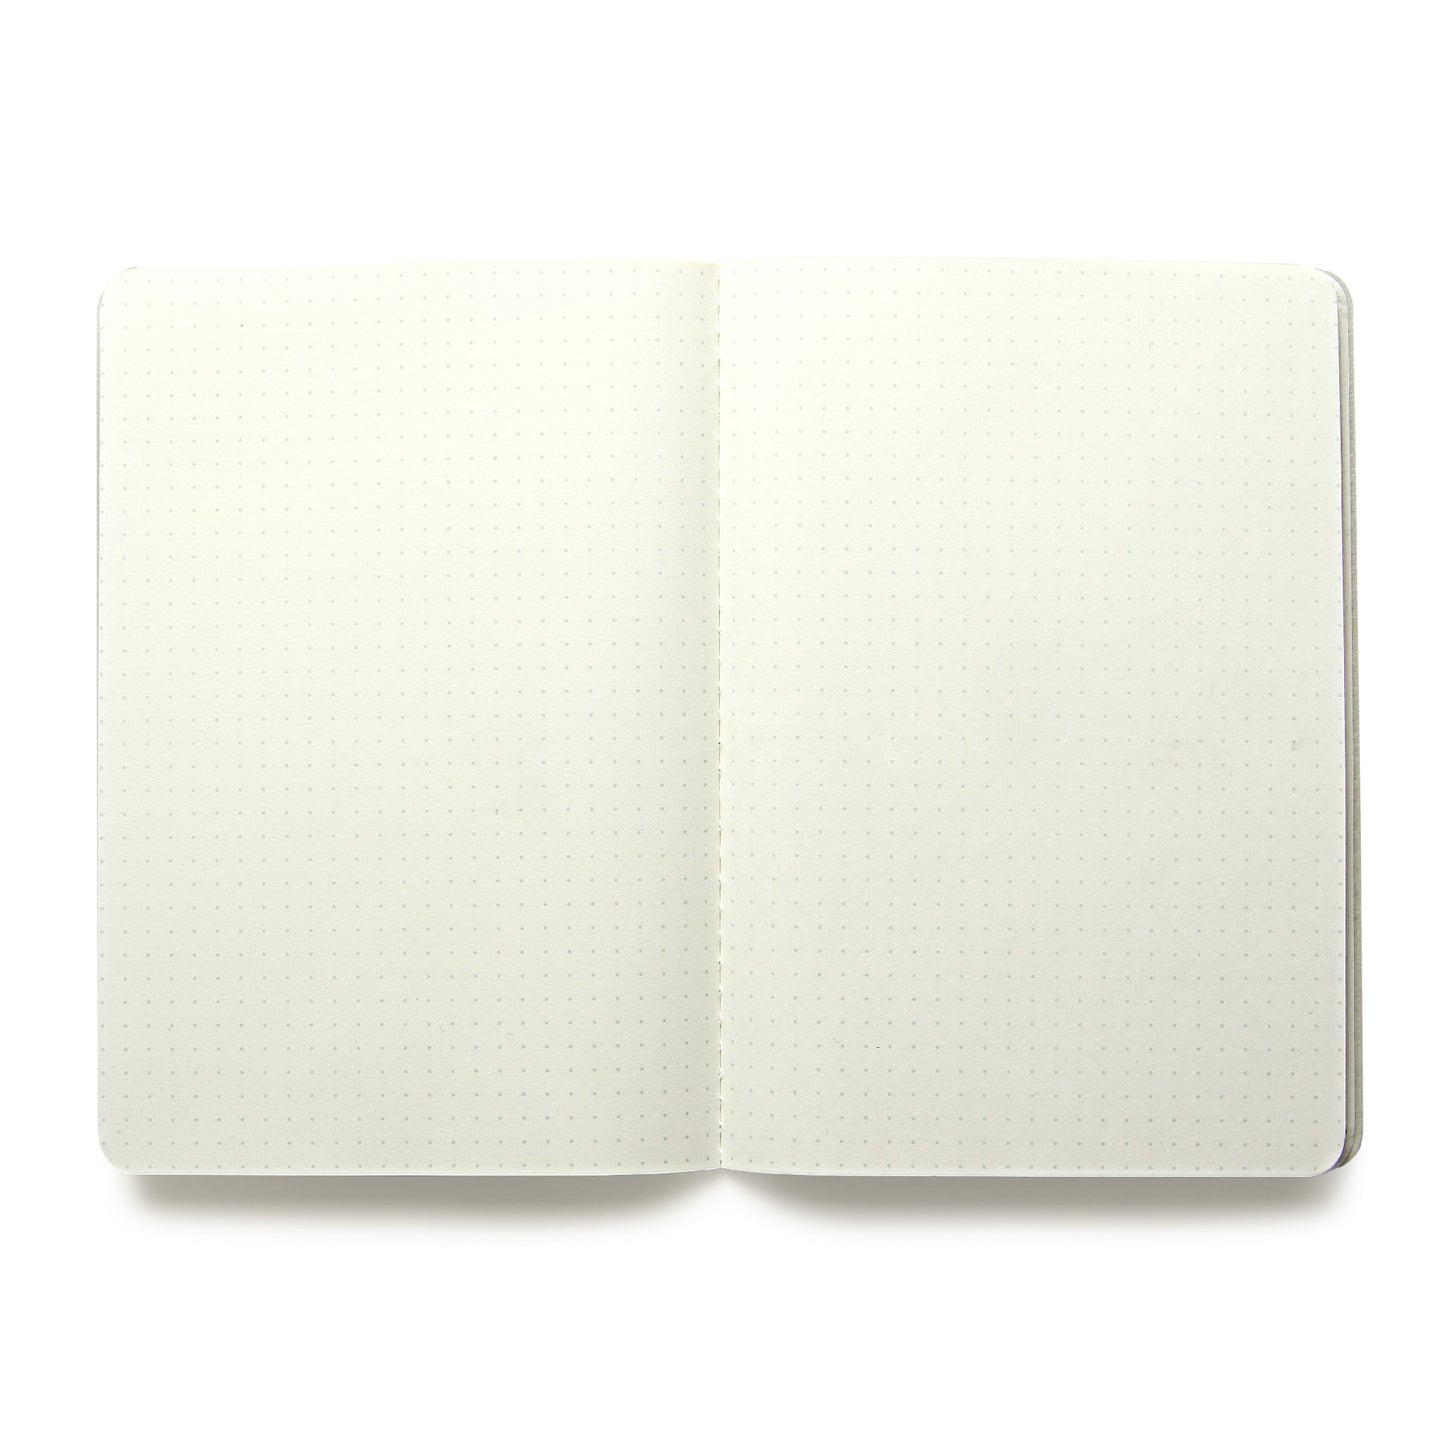 Baronfig Notebooks